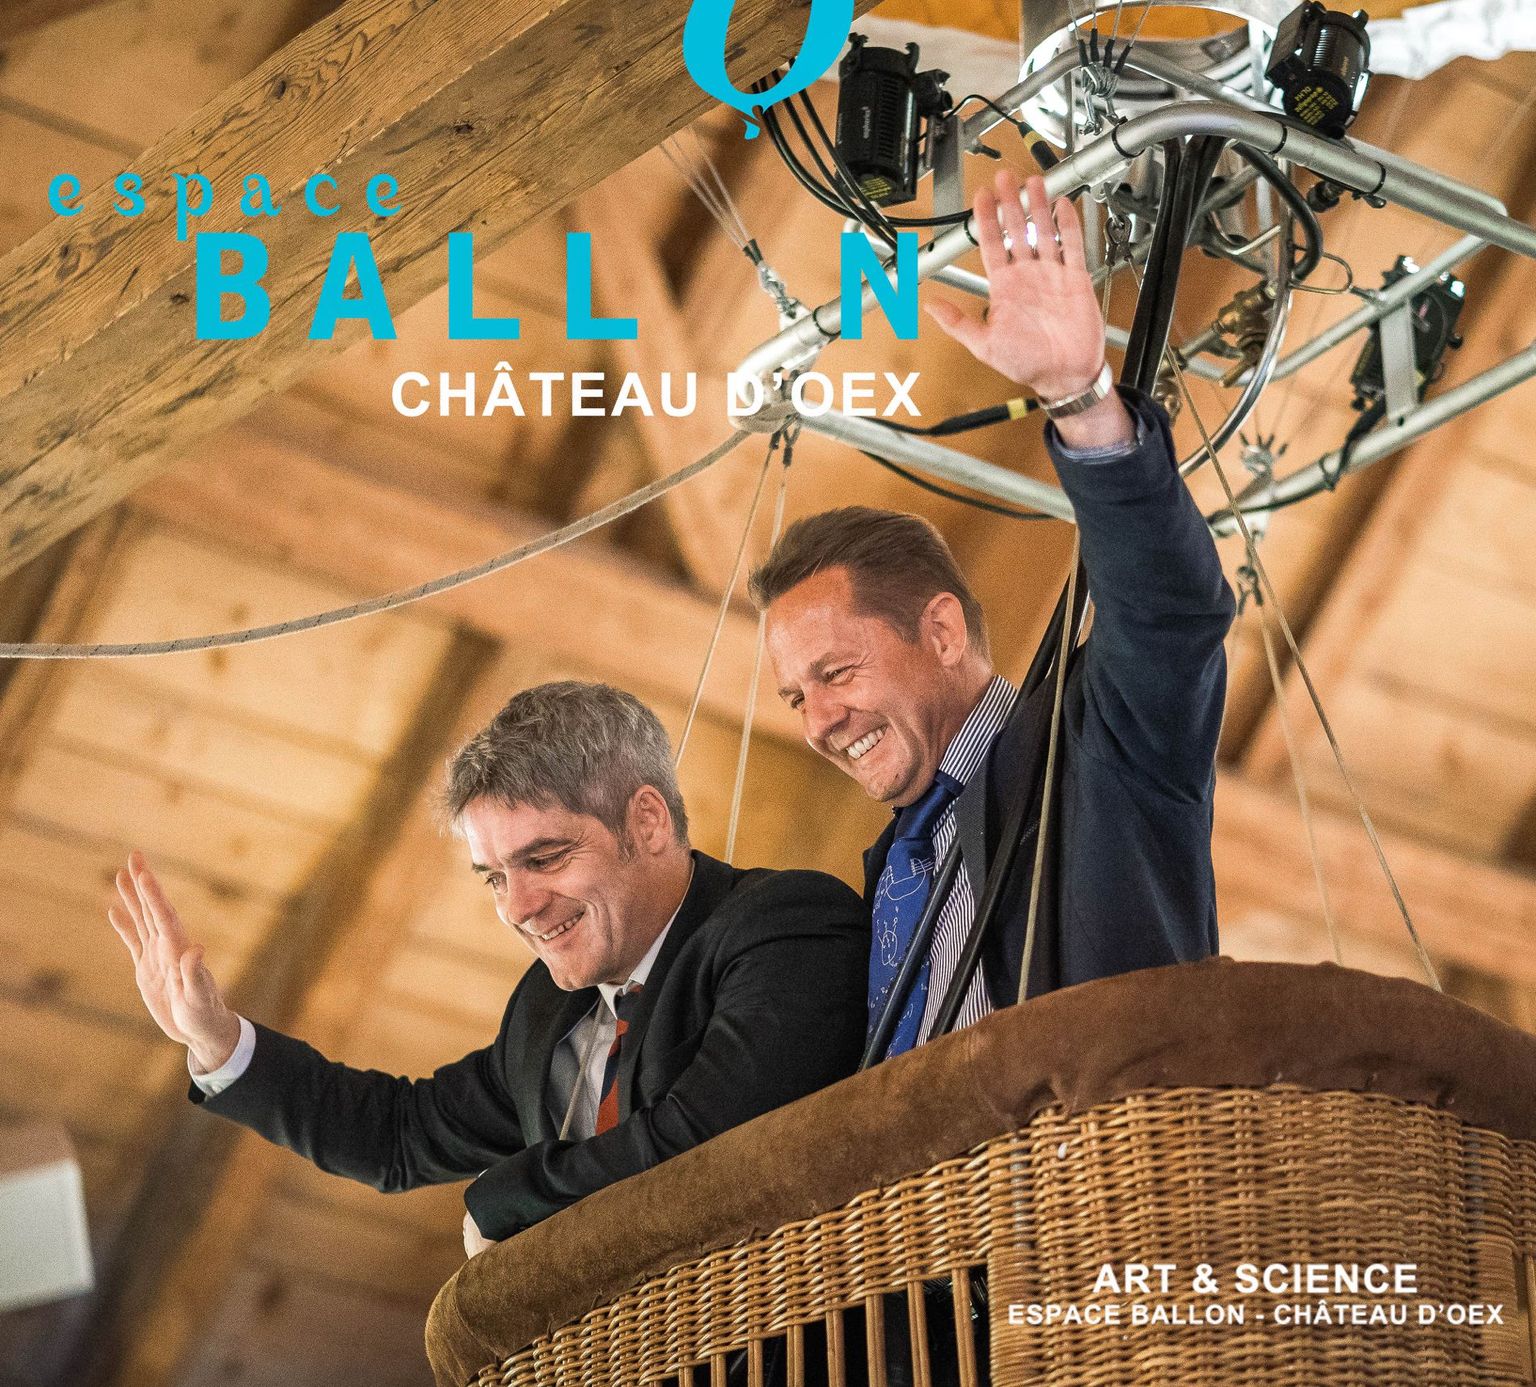 Michael Hoch et Hans Peter Beck sont les principaux acteurs de l'exposition Art & Science à l'Espace Ballon de Château d'Oex